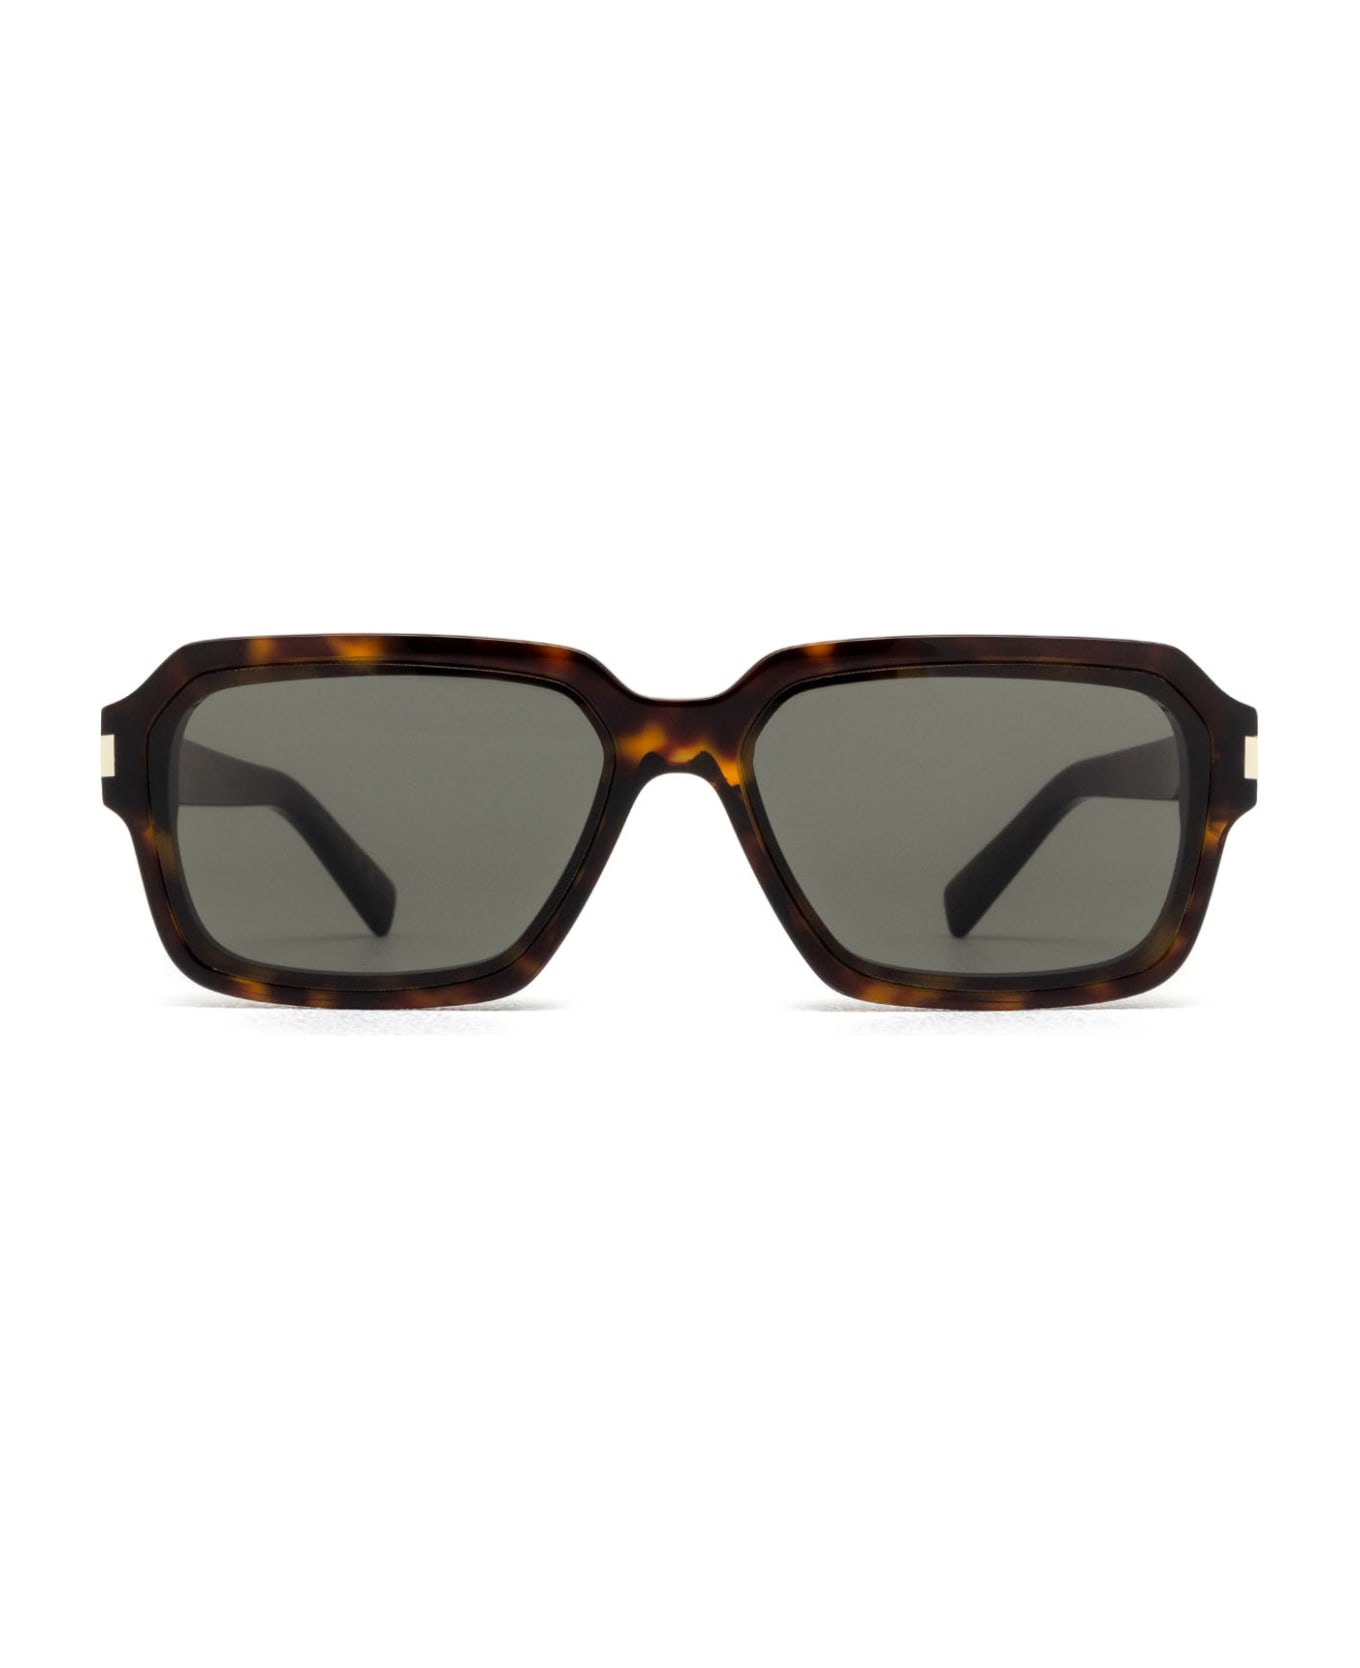 Saint Laurent Eyewear Sl 611 Havana Sunglasses - Havana